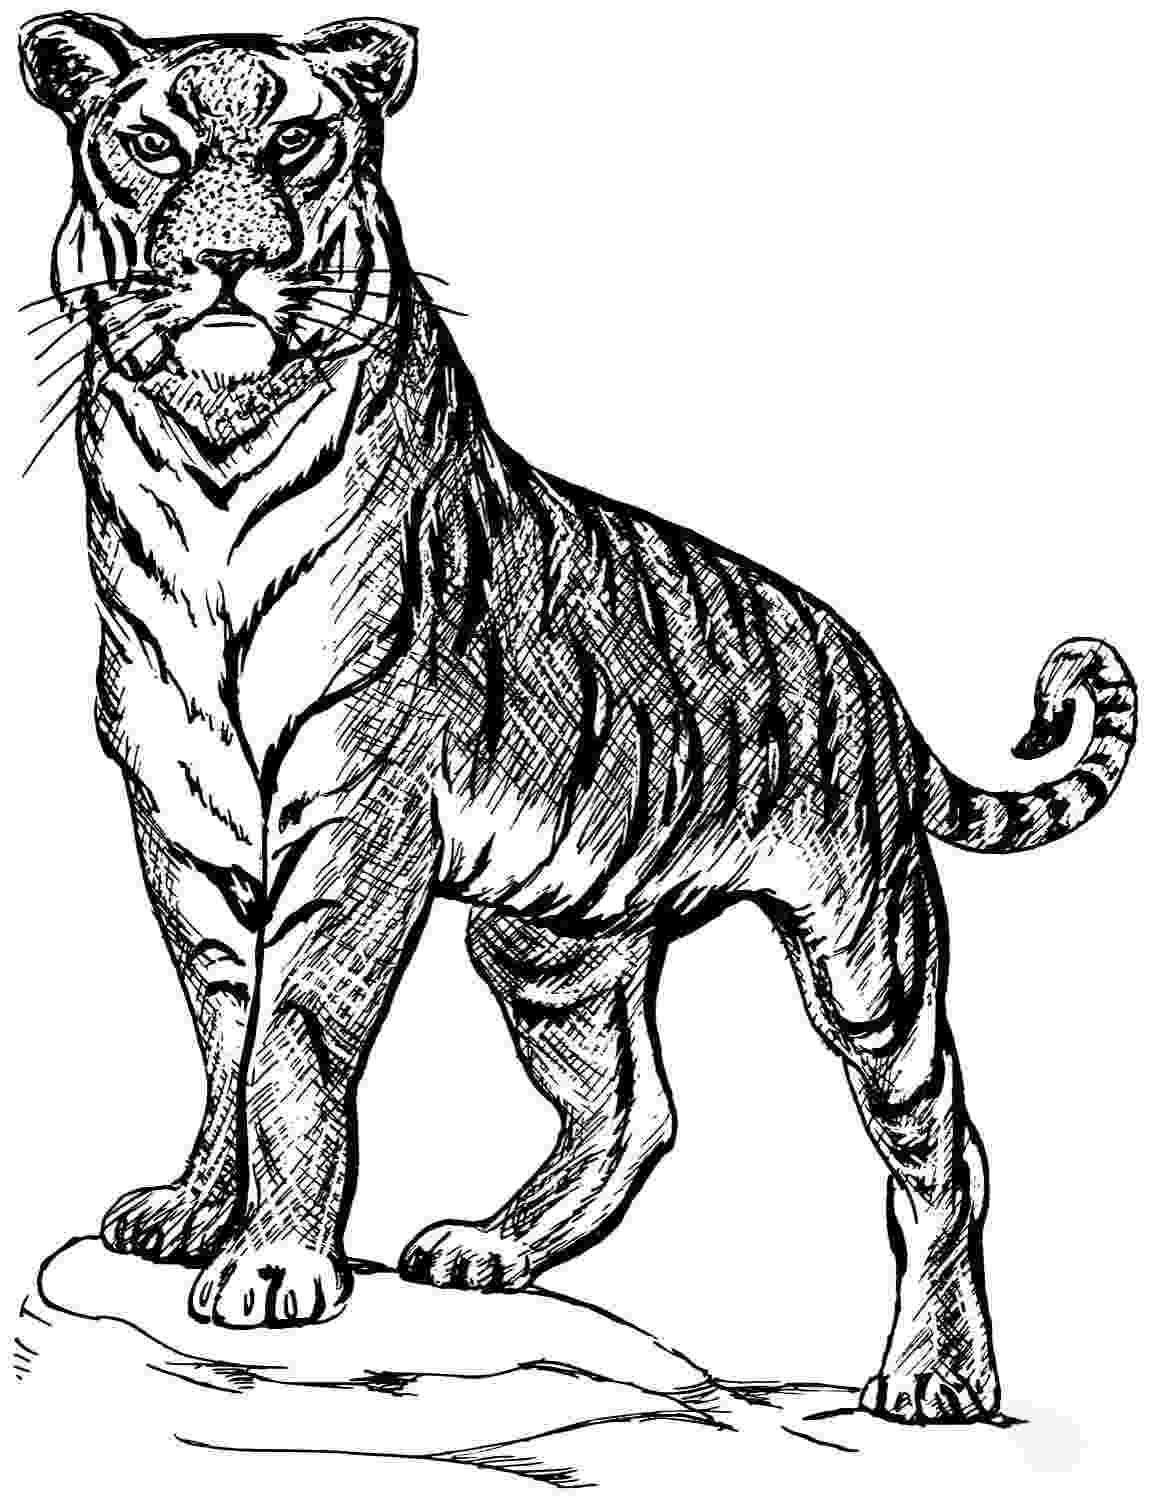 El tigre tiene una postura muy poderosa de Tiger.